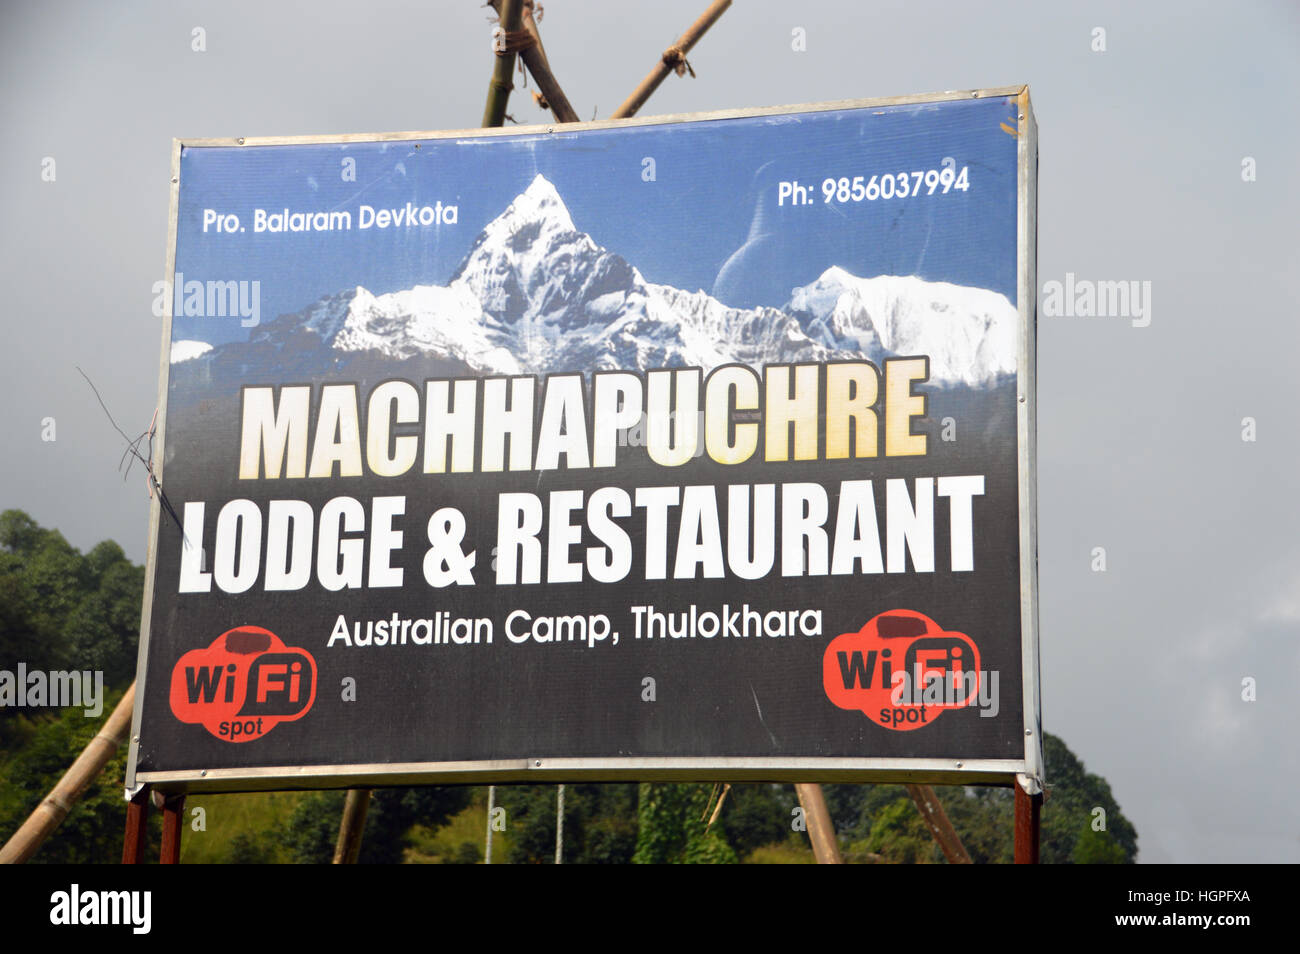 Seguire le indicazioni per Machhapuchre Lodge & Ristorante al Camp australiano Thulokhara, Santuario di Annapurna Himalaya,, Nepal, Asia. Foto Stock